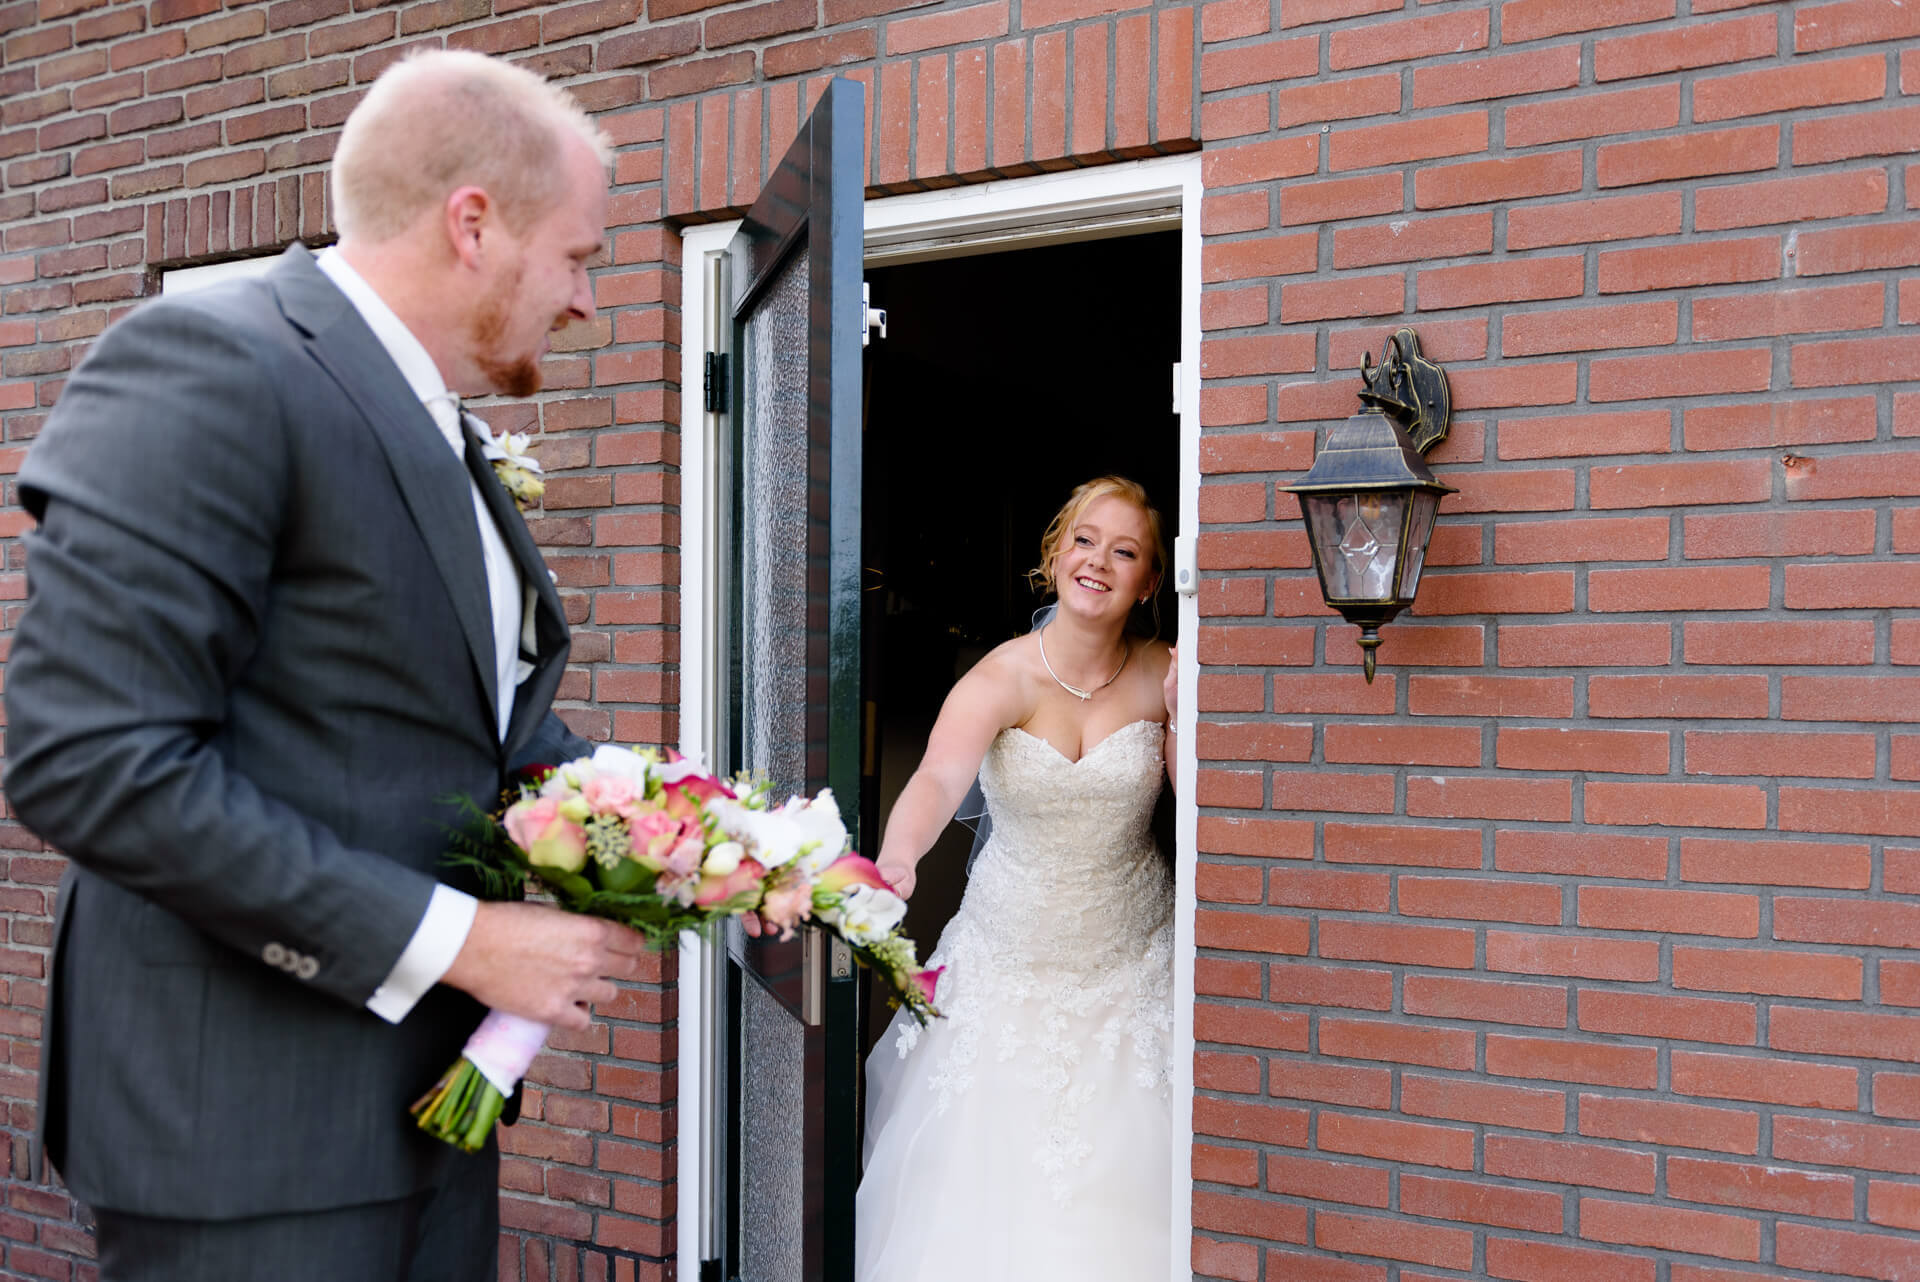 Bruiloft Hofstede De Middelburg Voorst Bussloo met bruidsfotografie door trouwfotograaf Grietje Mesman uit Deventer